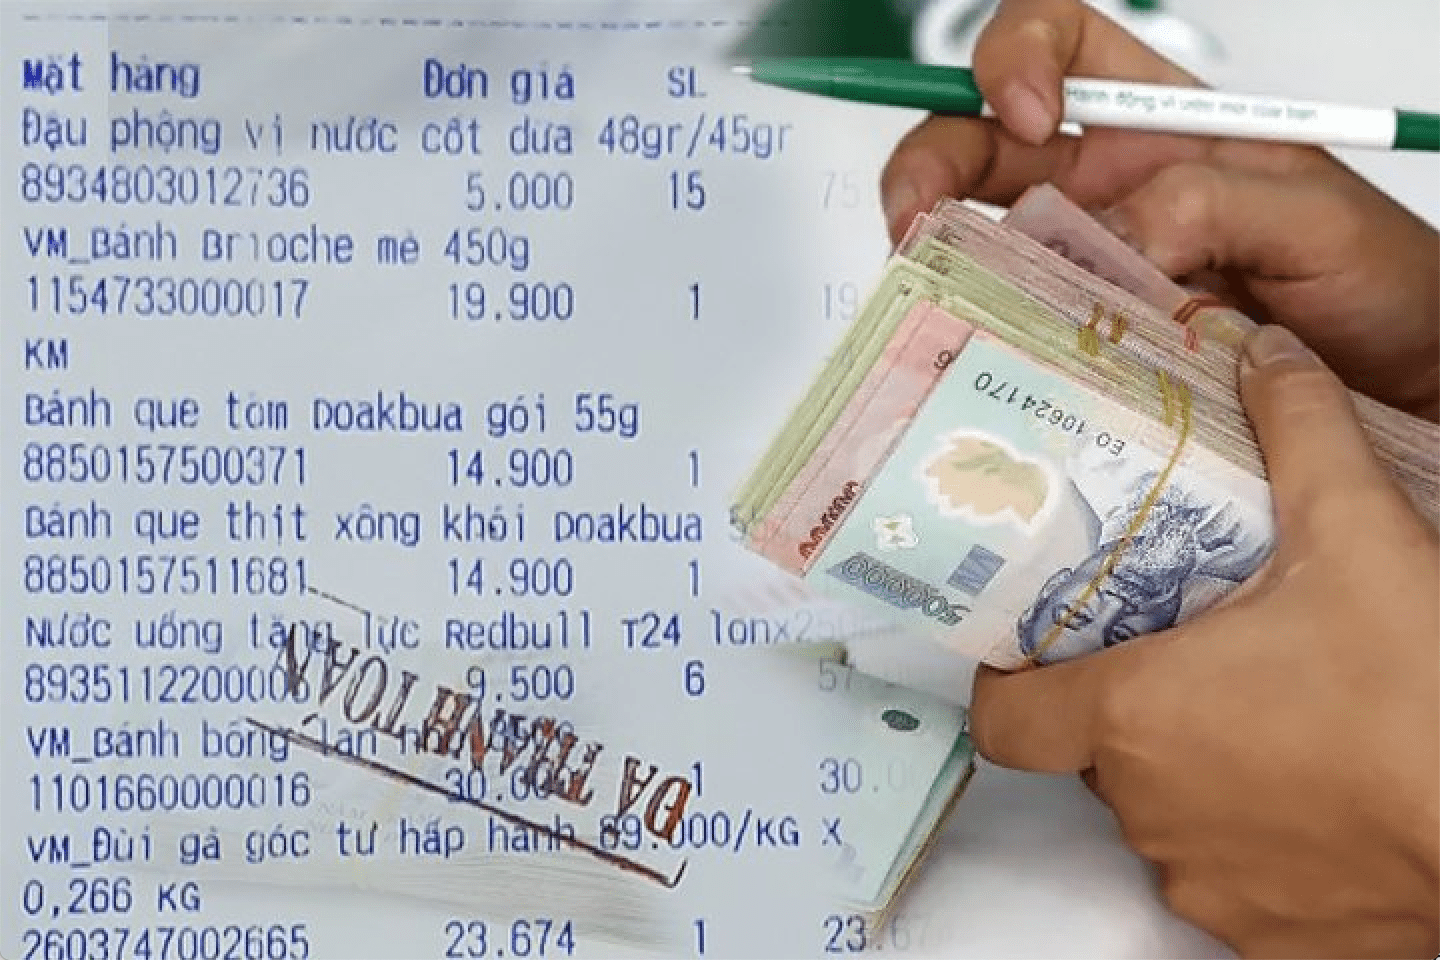 Hóa đơn thanh toán mua hàng ở Việt Nam và gói tiền Việt Nam.